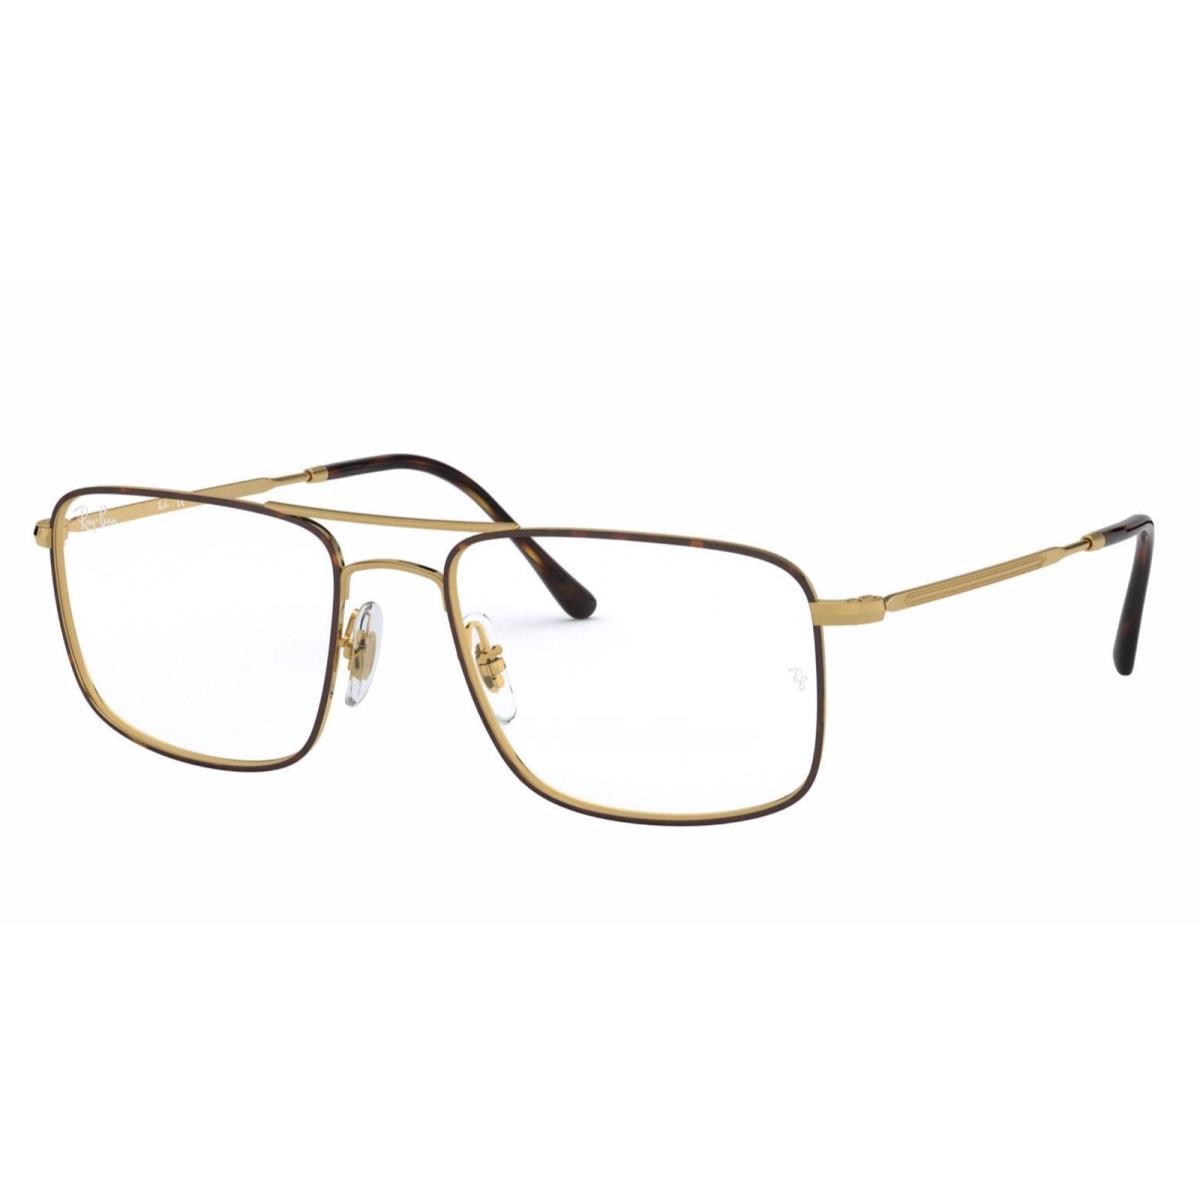 Ray-ban Rx-able Eyeglasses RB 6434 2945 53-18 140 Gold Tortoise Frames - Frame: Gold & Tortoise, Lens: